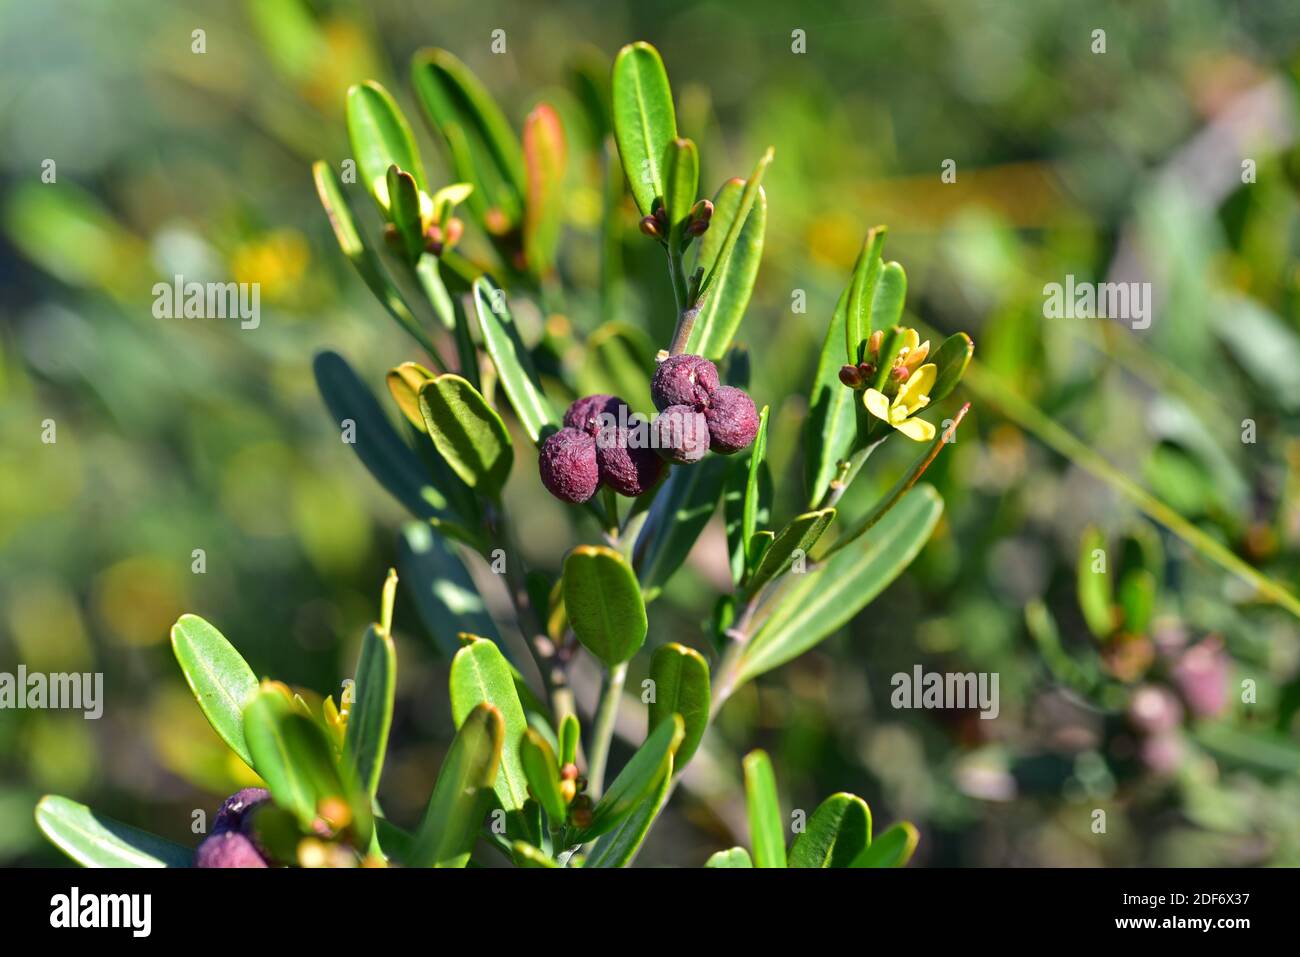 El olivo de esurgencia (Cneorum tricoccon o Cneorum tricoccum) es un arbusto perenne nativo de la cuenca mediterránea occidental. Detalle de flores y frutas. Foto de stock